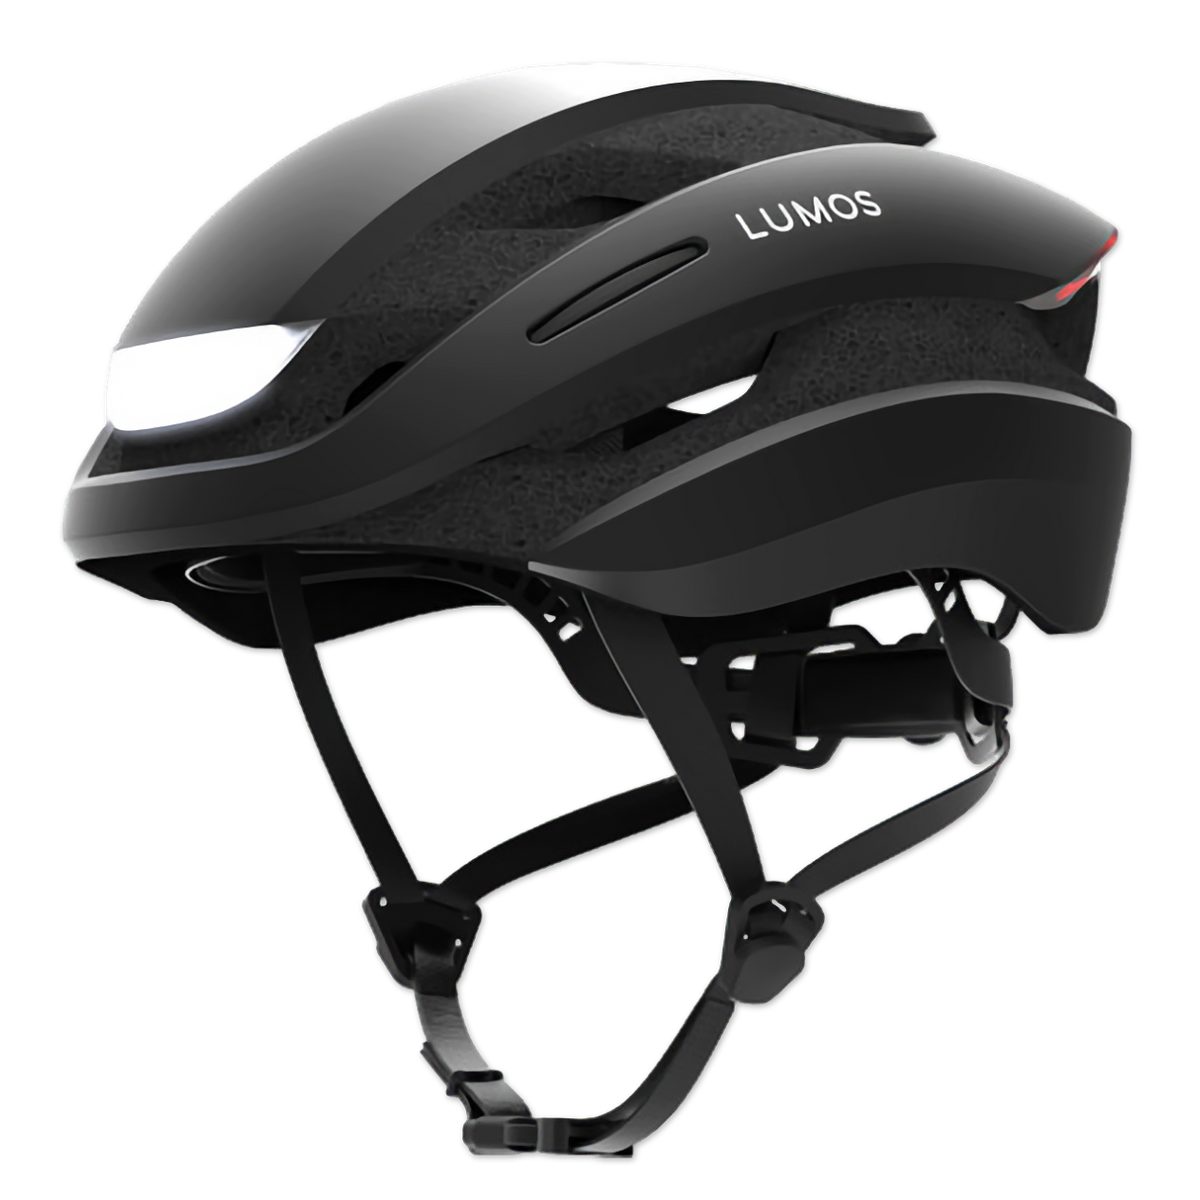 Lumos Fahrradhelm Lumos ULTRA+, MIPS - Fahrradhelm mit Soft-Visor und Fliegennetz, LED-Beleuchtung vorne und hinten, Bremslich und Blinker